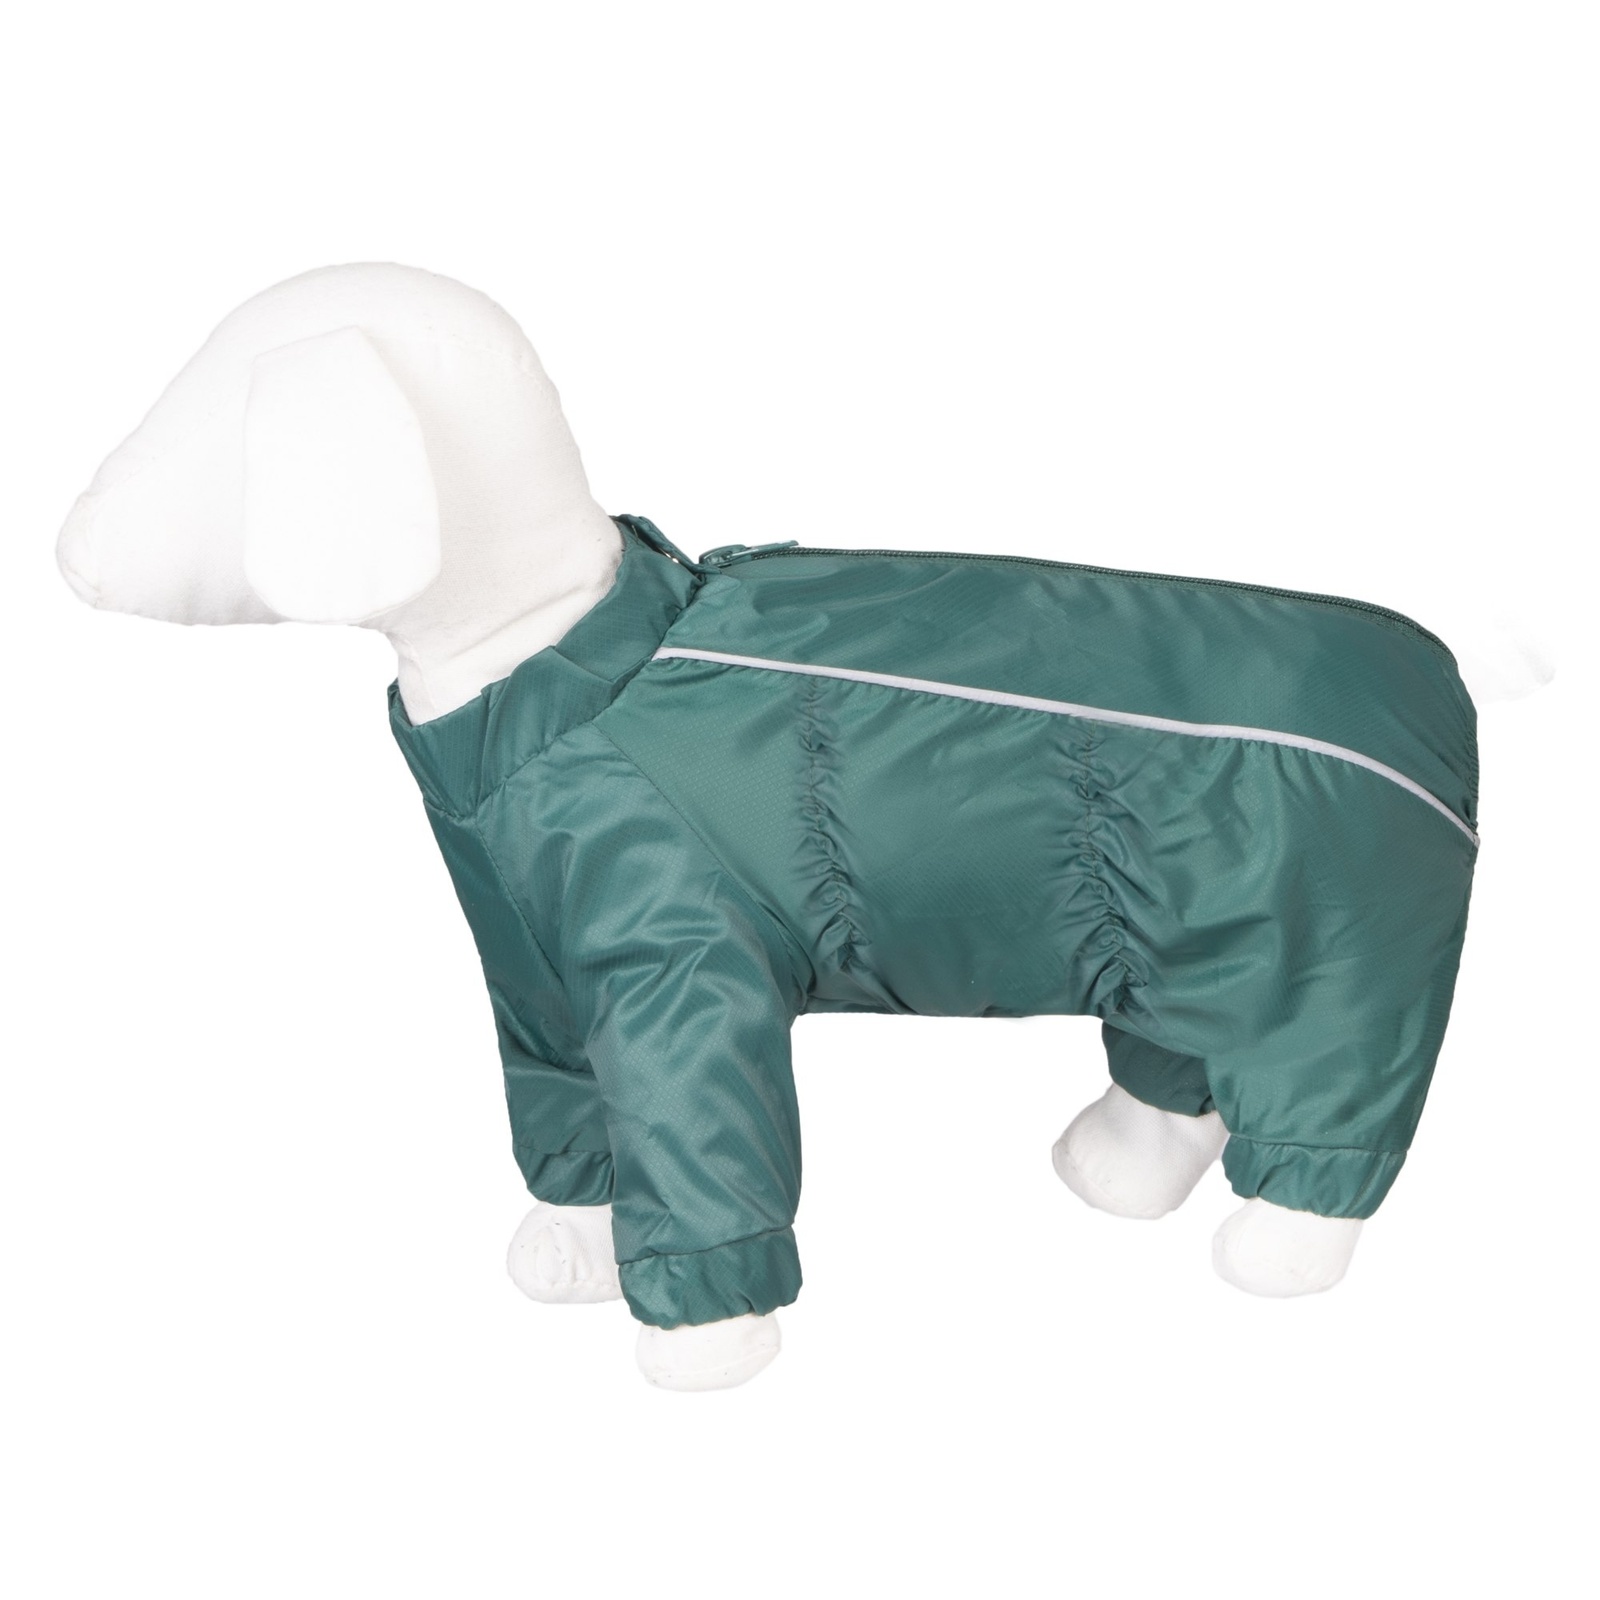 Yami-Yami одежда дождевик для собак малых пород, изумрудный (М/2) Yami-Yami одежда дождевик для собак малых пород, изумрудный (М/2) - фото 1